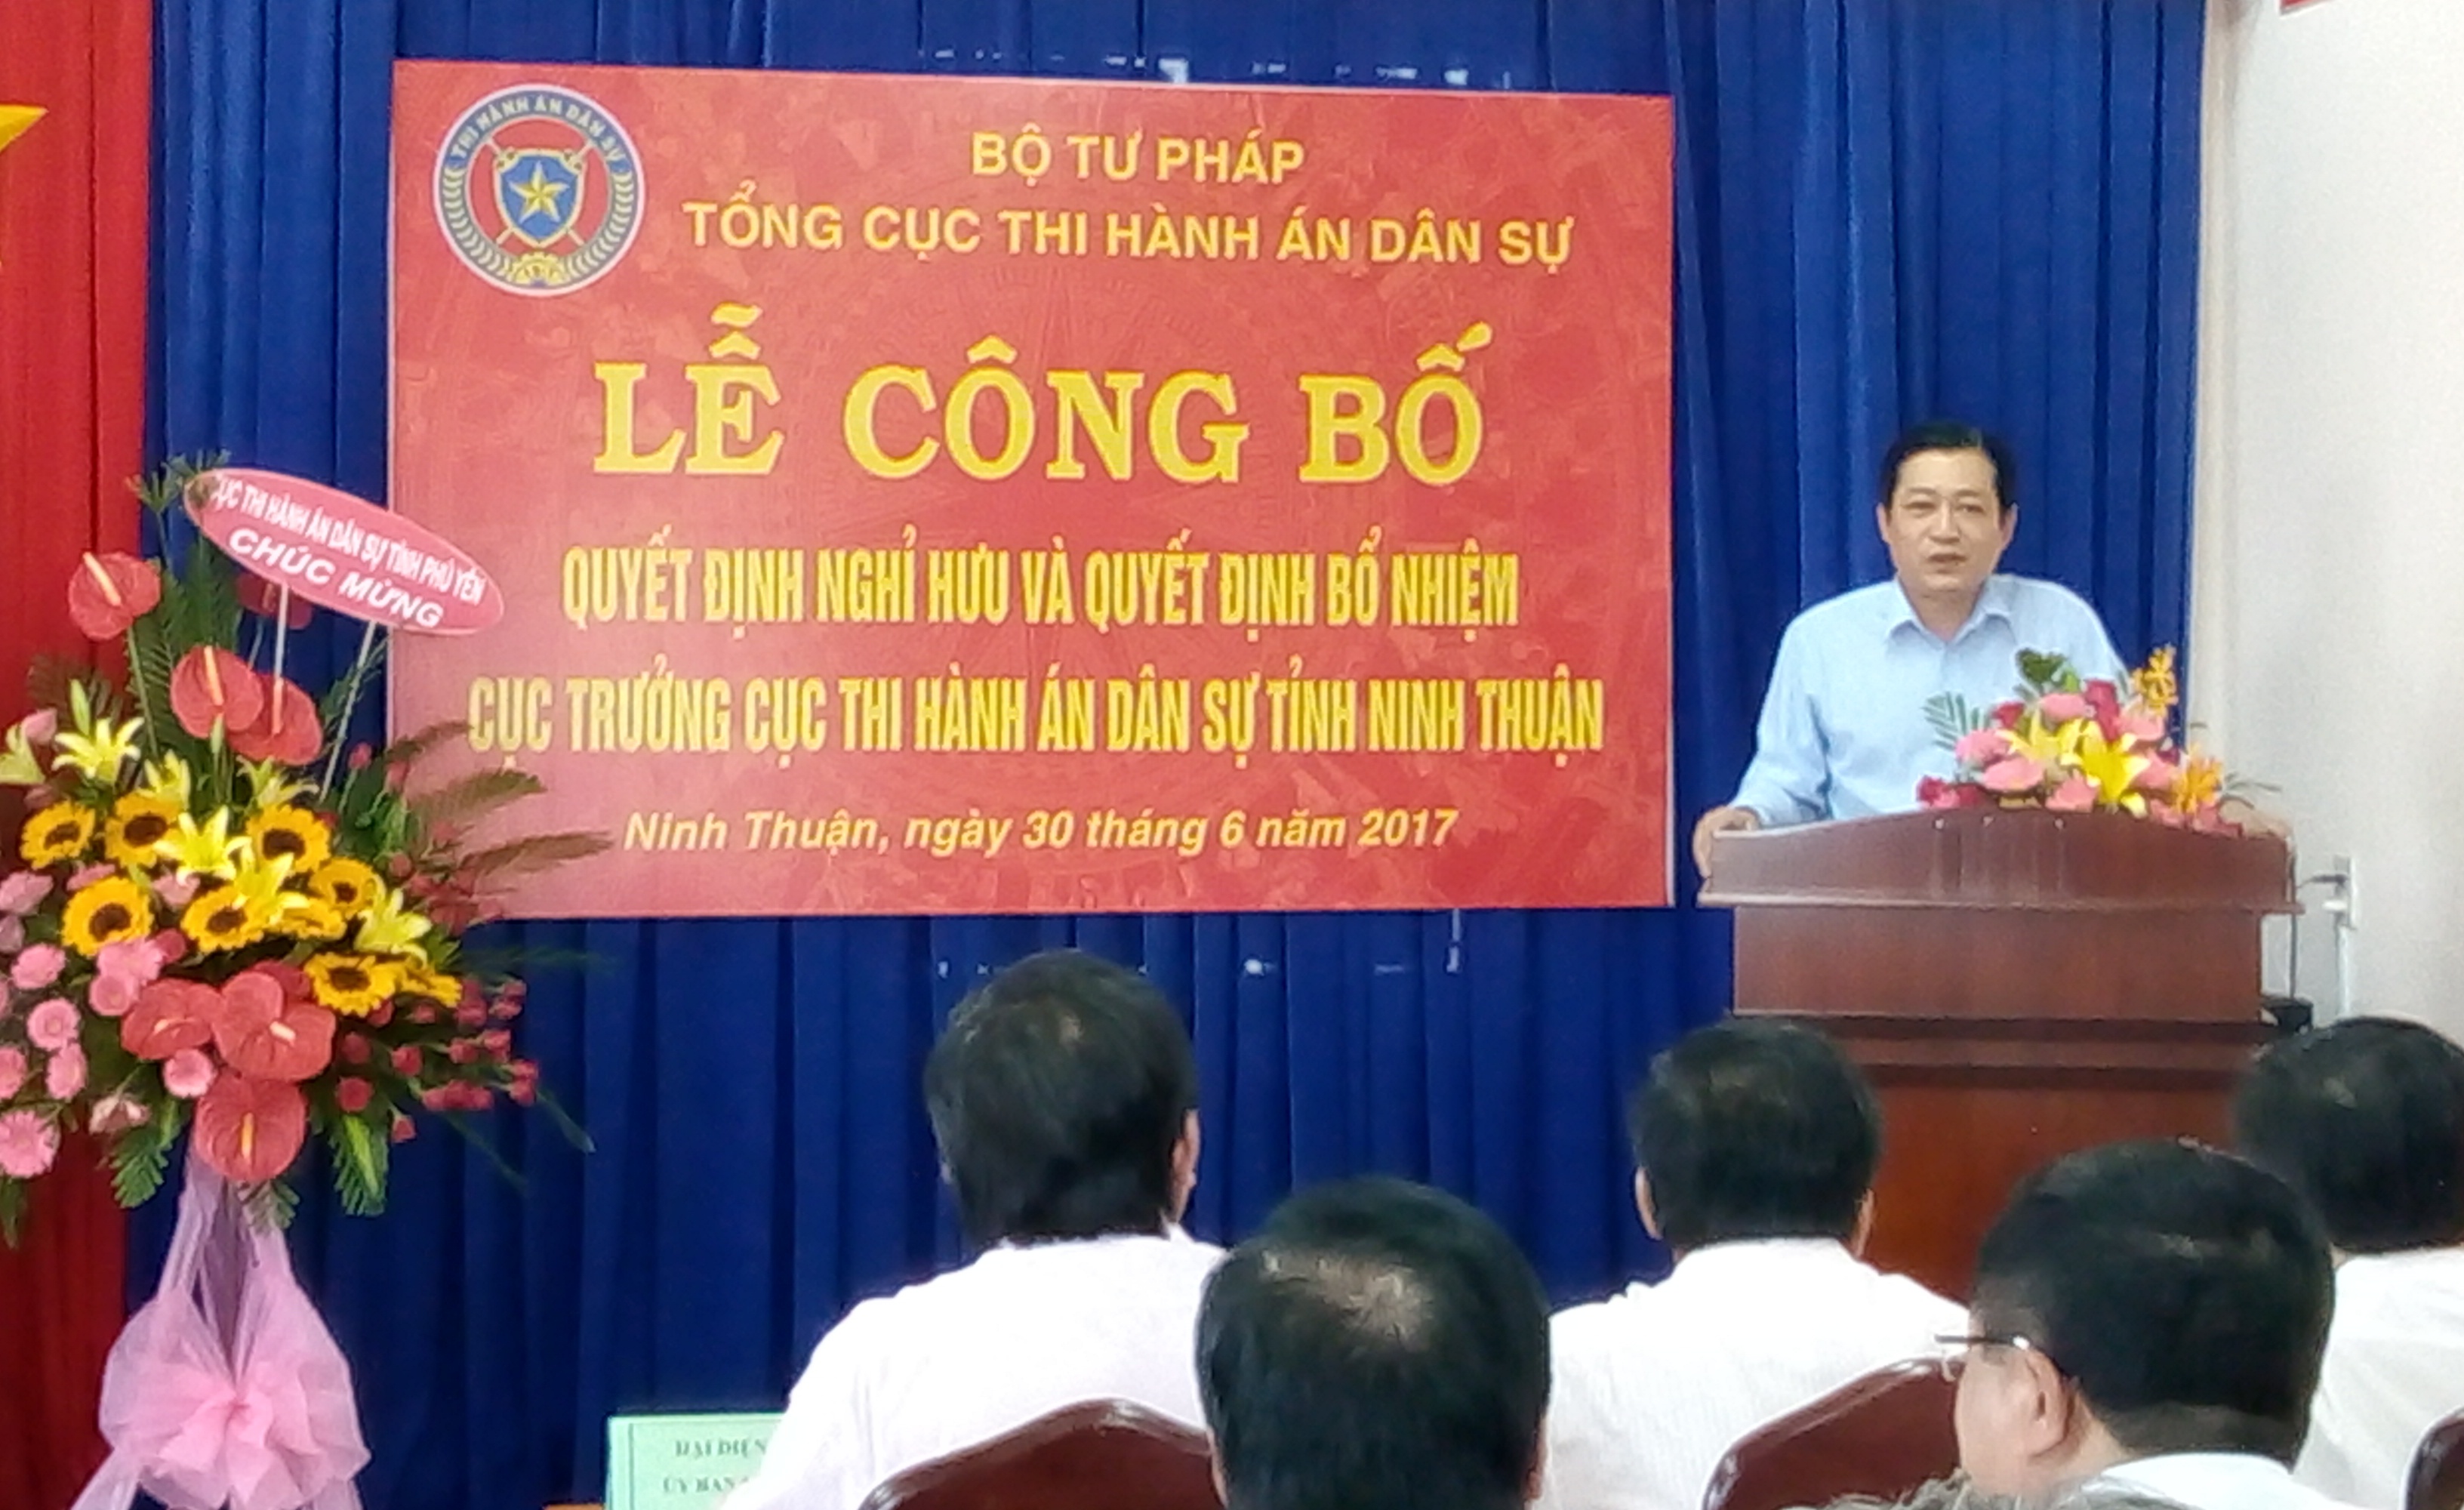 Lễ Công bố Quyết định nghỉ hưu và Quyết định bổ nhiệm Cục trưởng Cục Thi hành án dân sự tỉnh Ninh Thuận